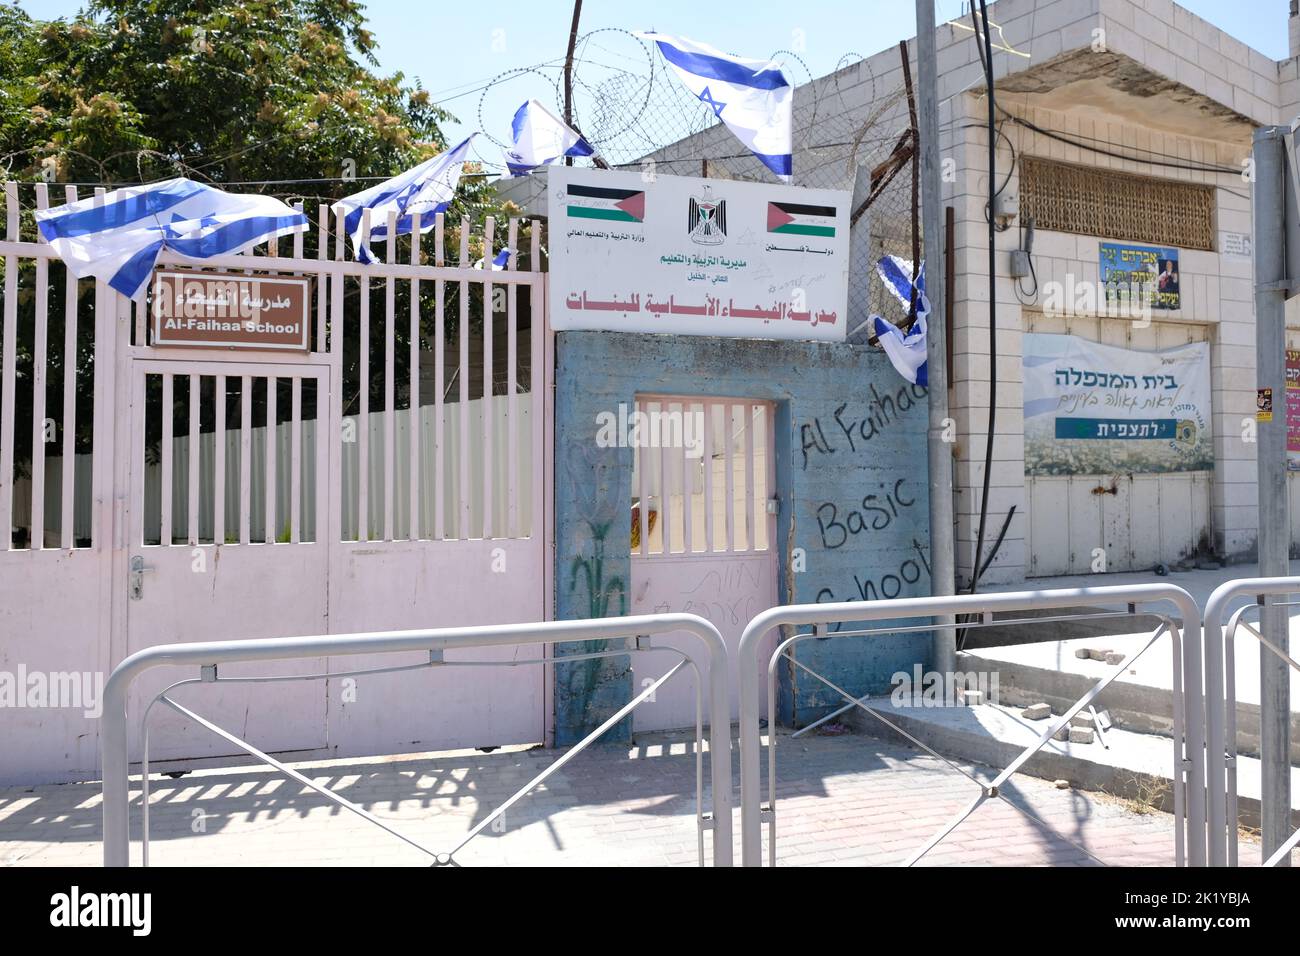 Al Faihaa Basic School in Hebron Palestine Stock Photo